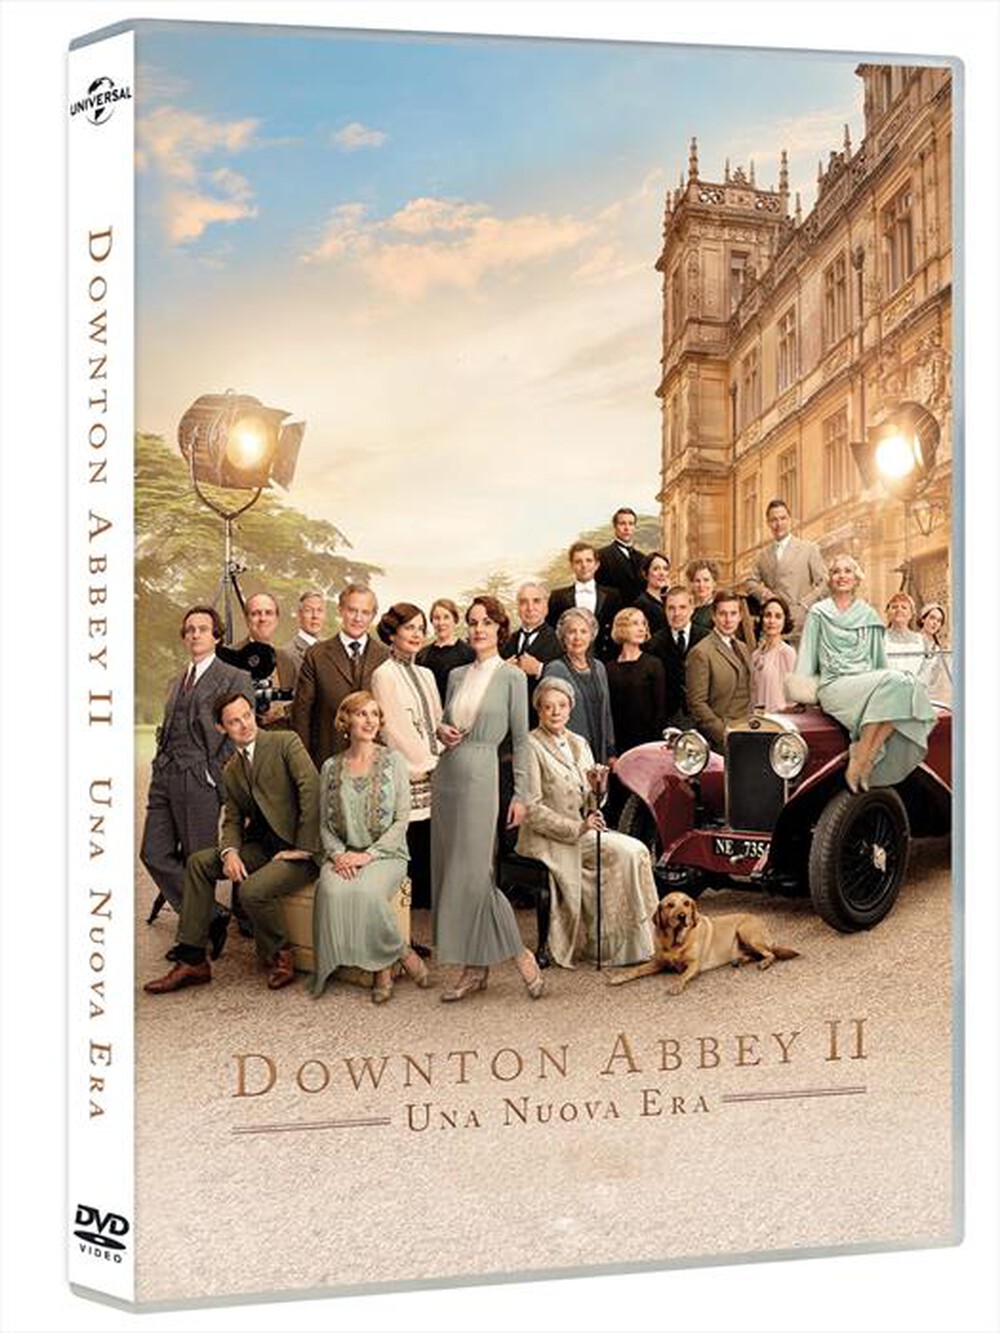 "UNIVERSAL PICTURES - Downton Abbey 2: Una Nuova Era"